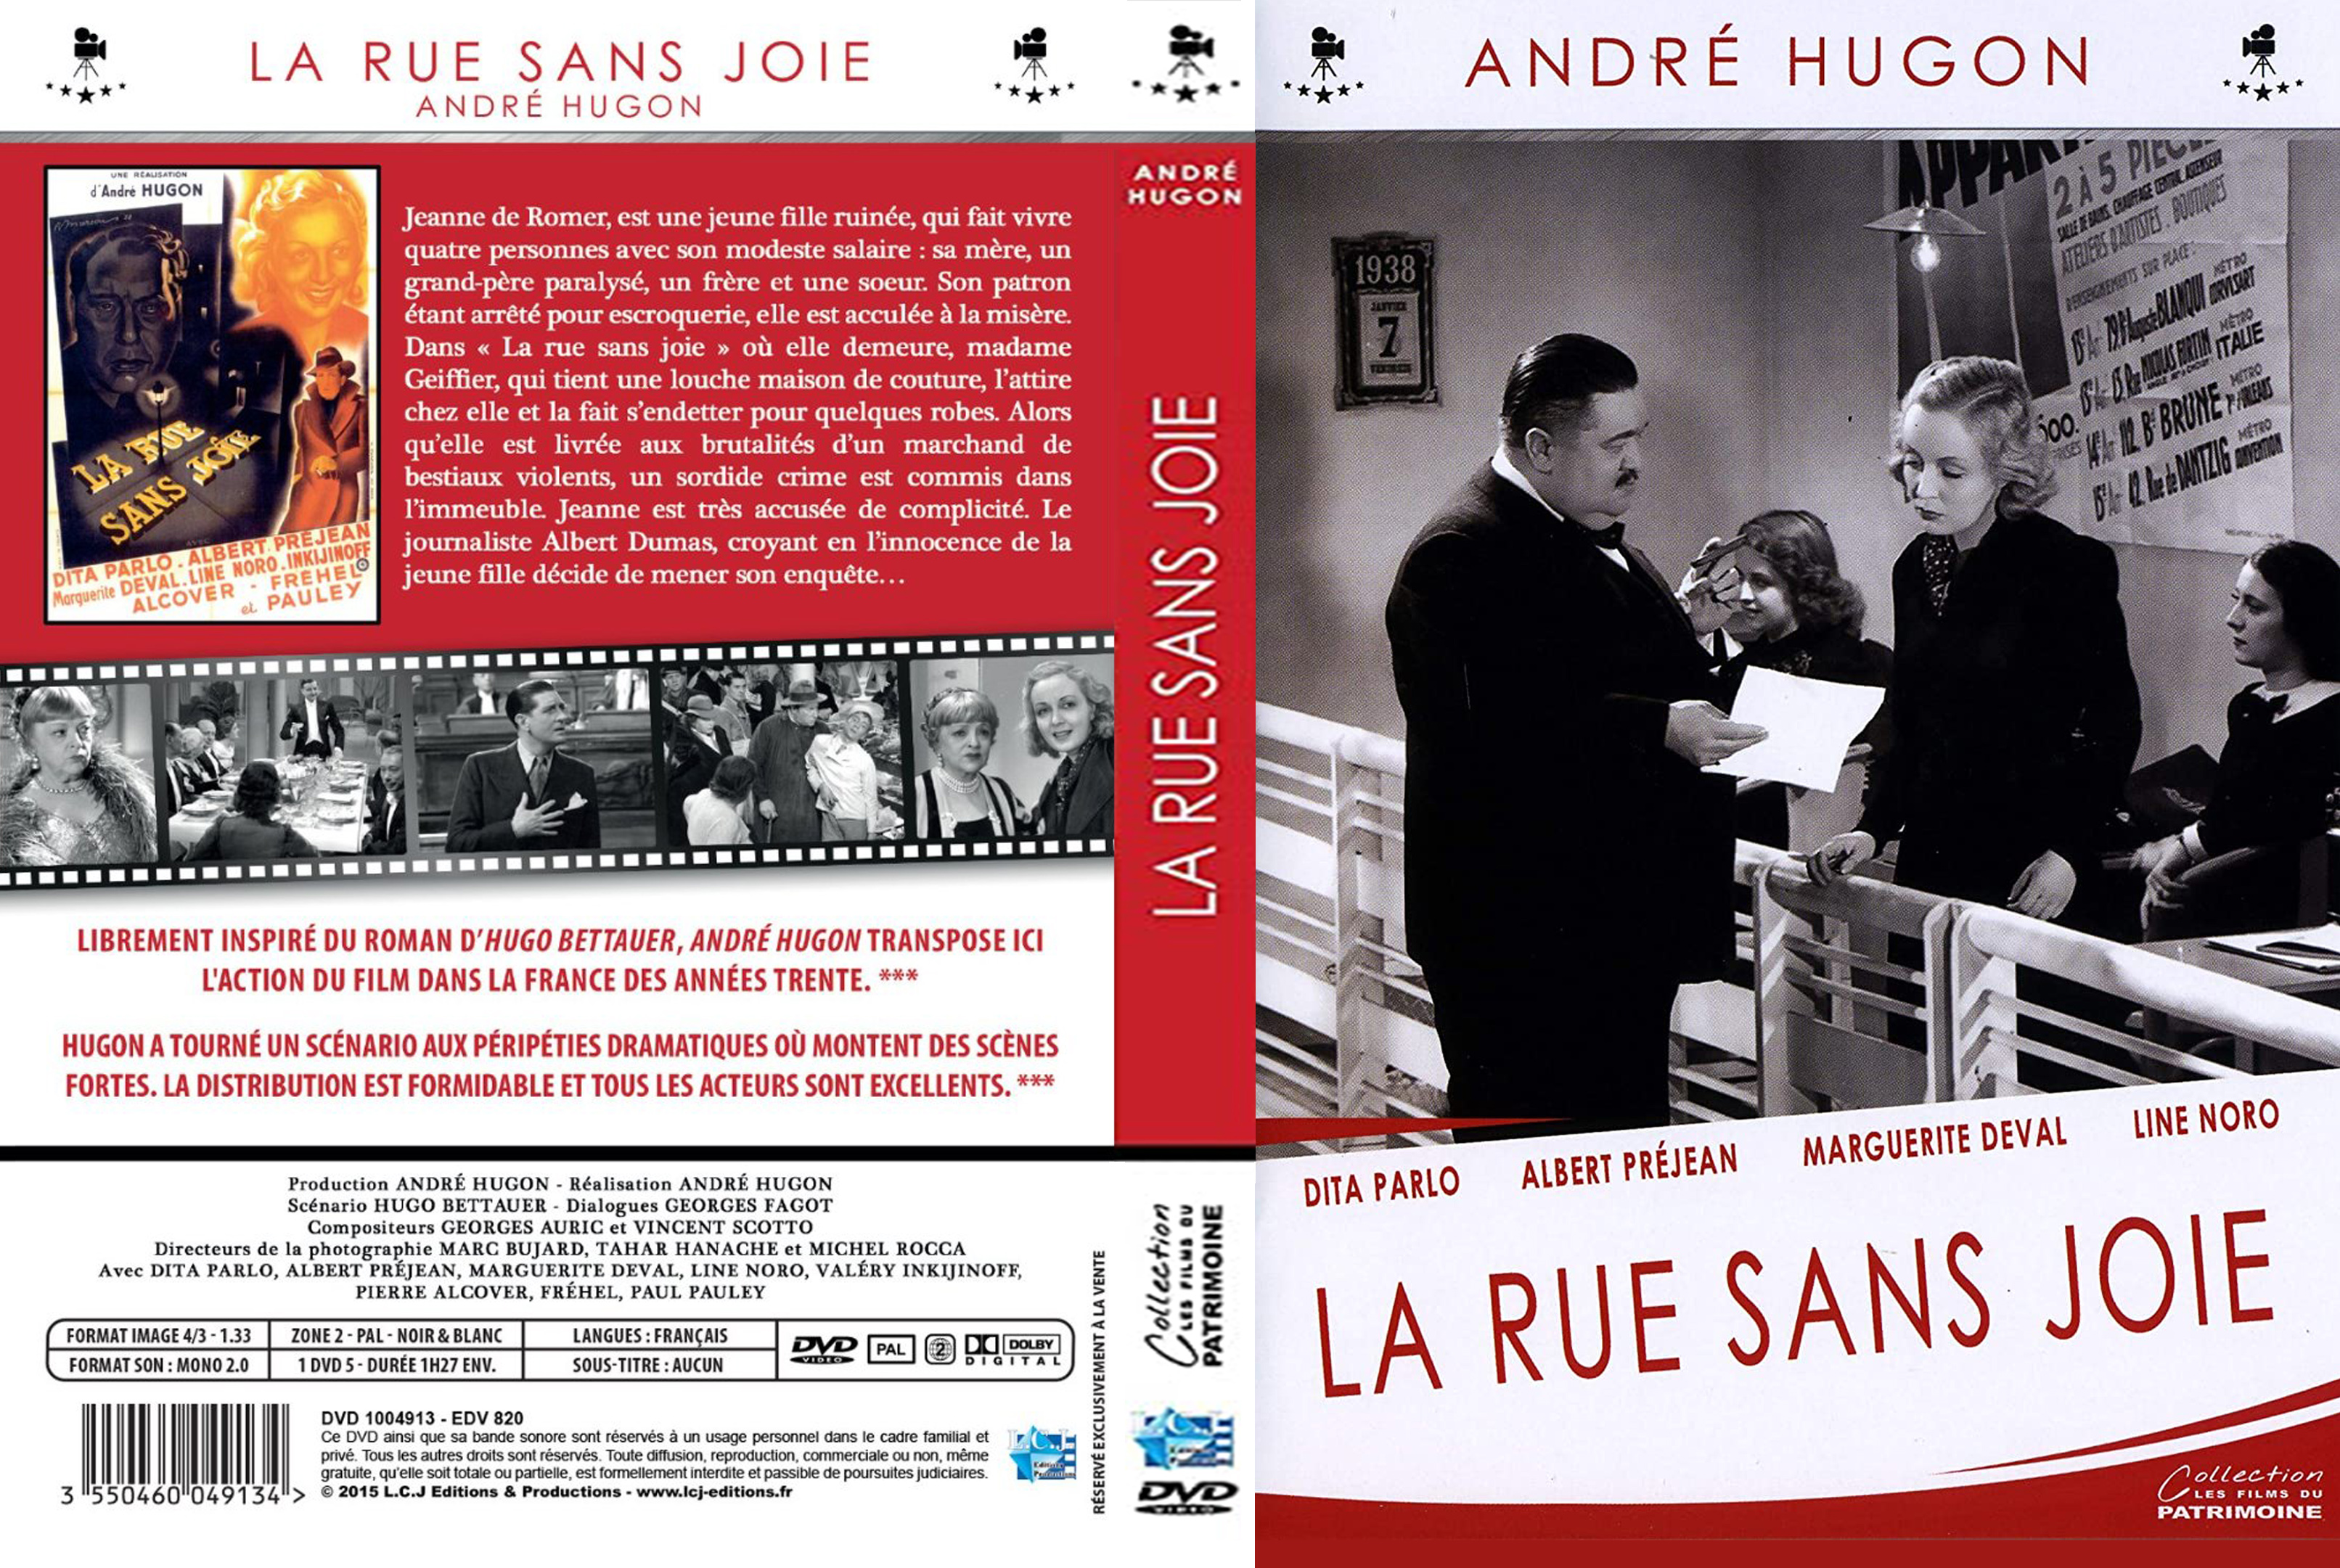 Jaquette DVD La rue sans joie custom